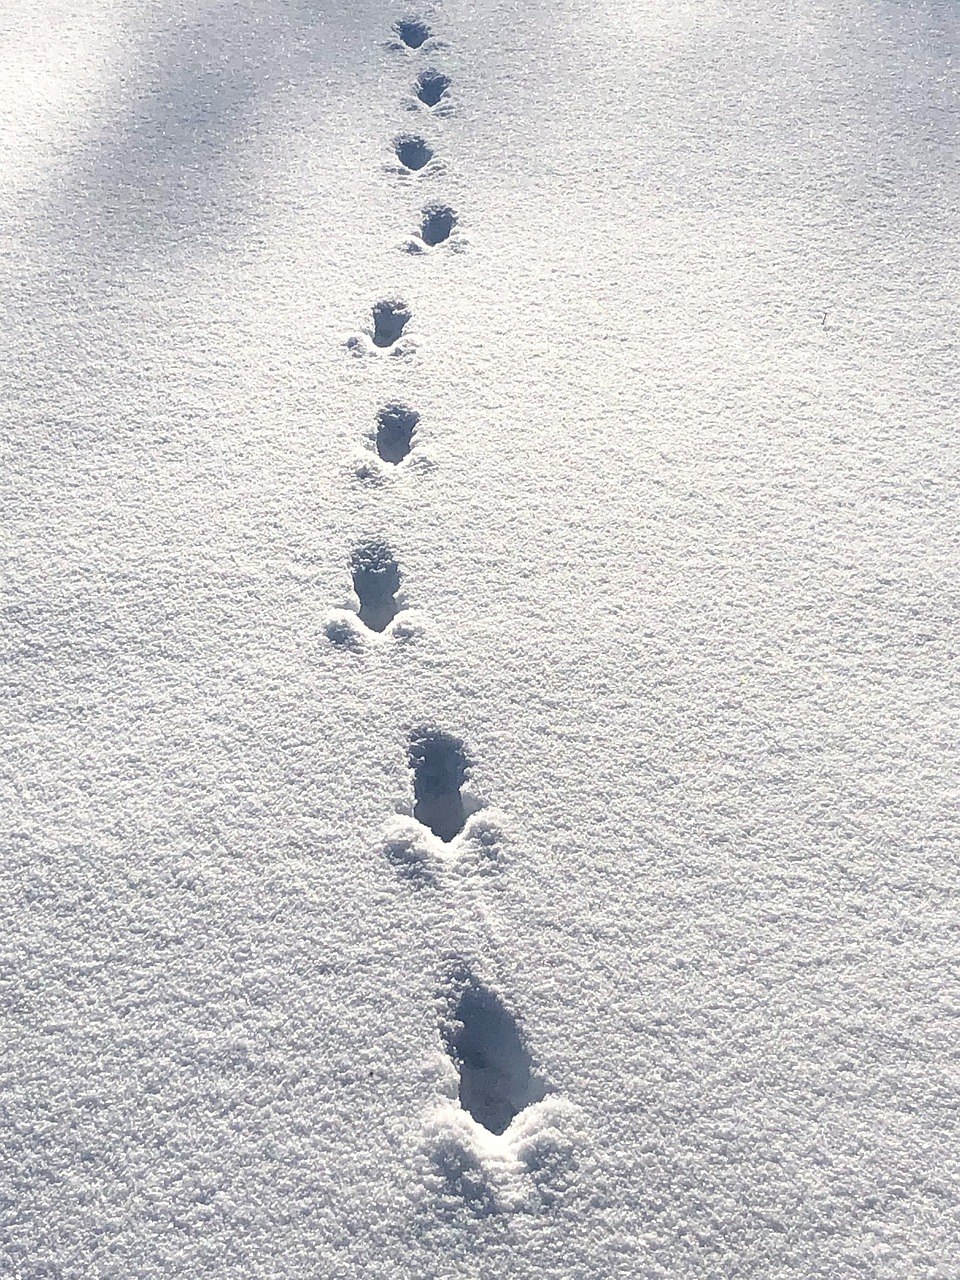 Зверя по следам слушать. Кошачьи следы на снегу. Следы кошки на снегу. Следы на снегу картинки. Медвежьи следы на снегу.